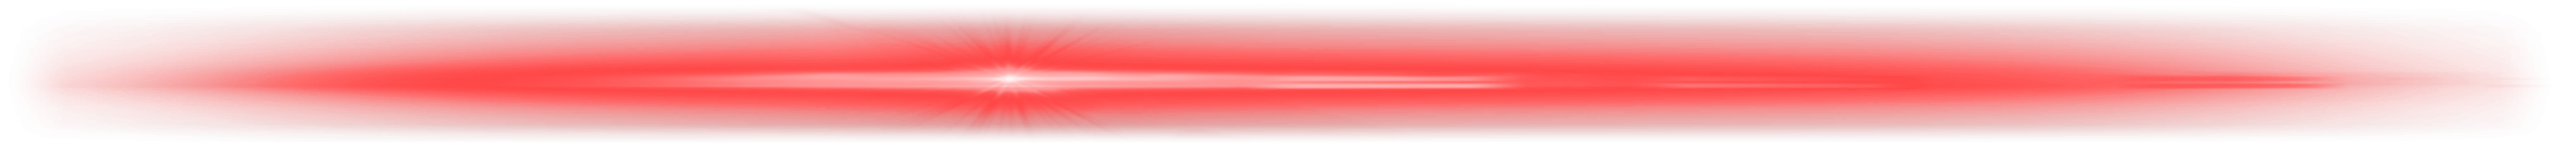 Robbox Red Laser